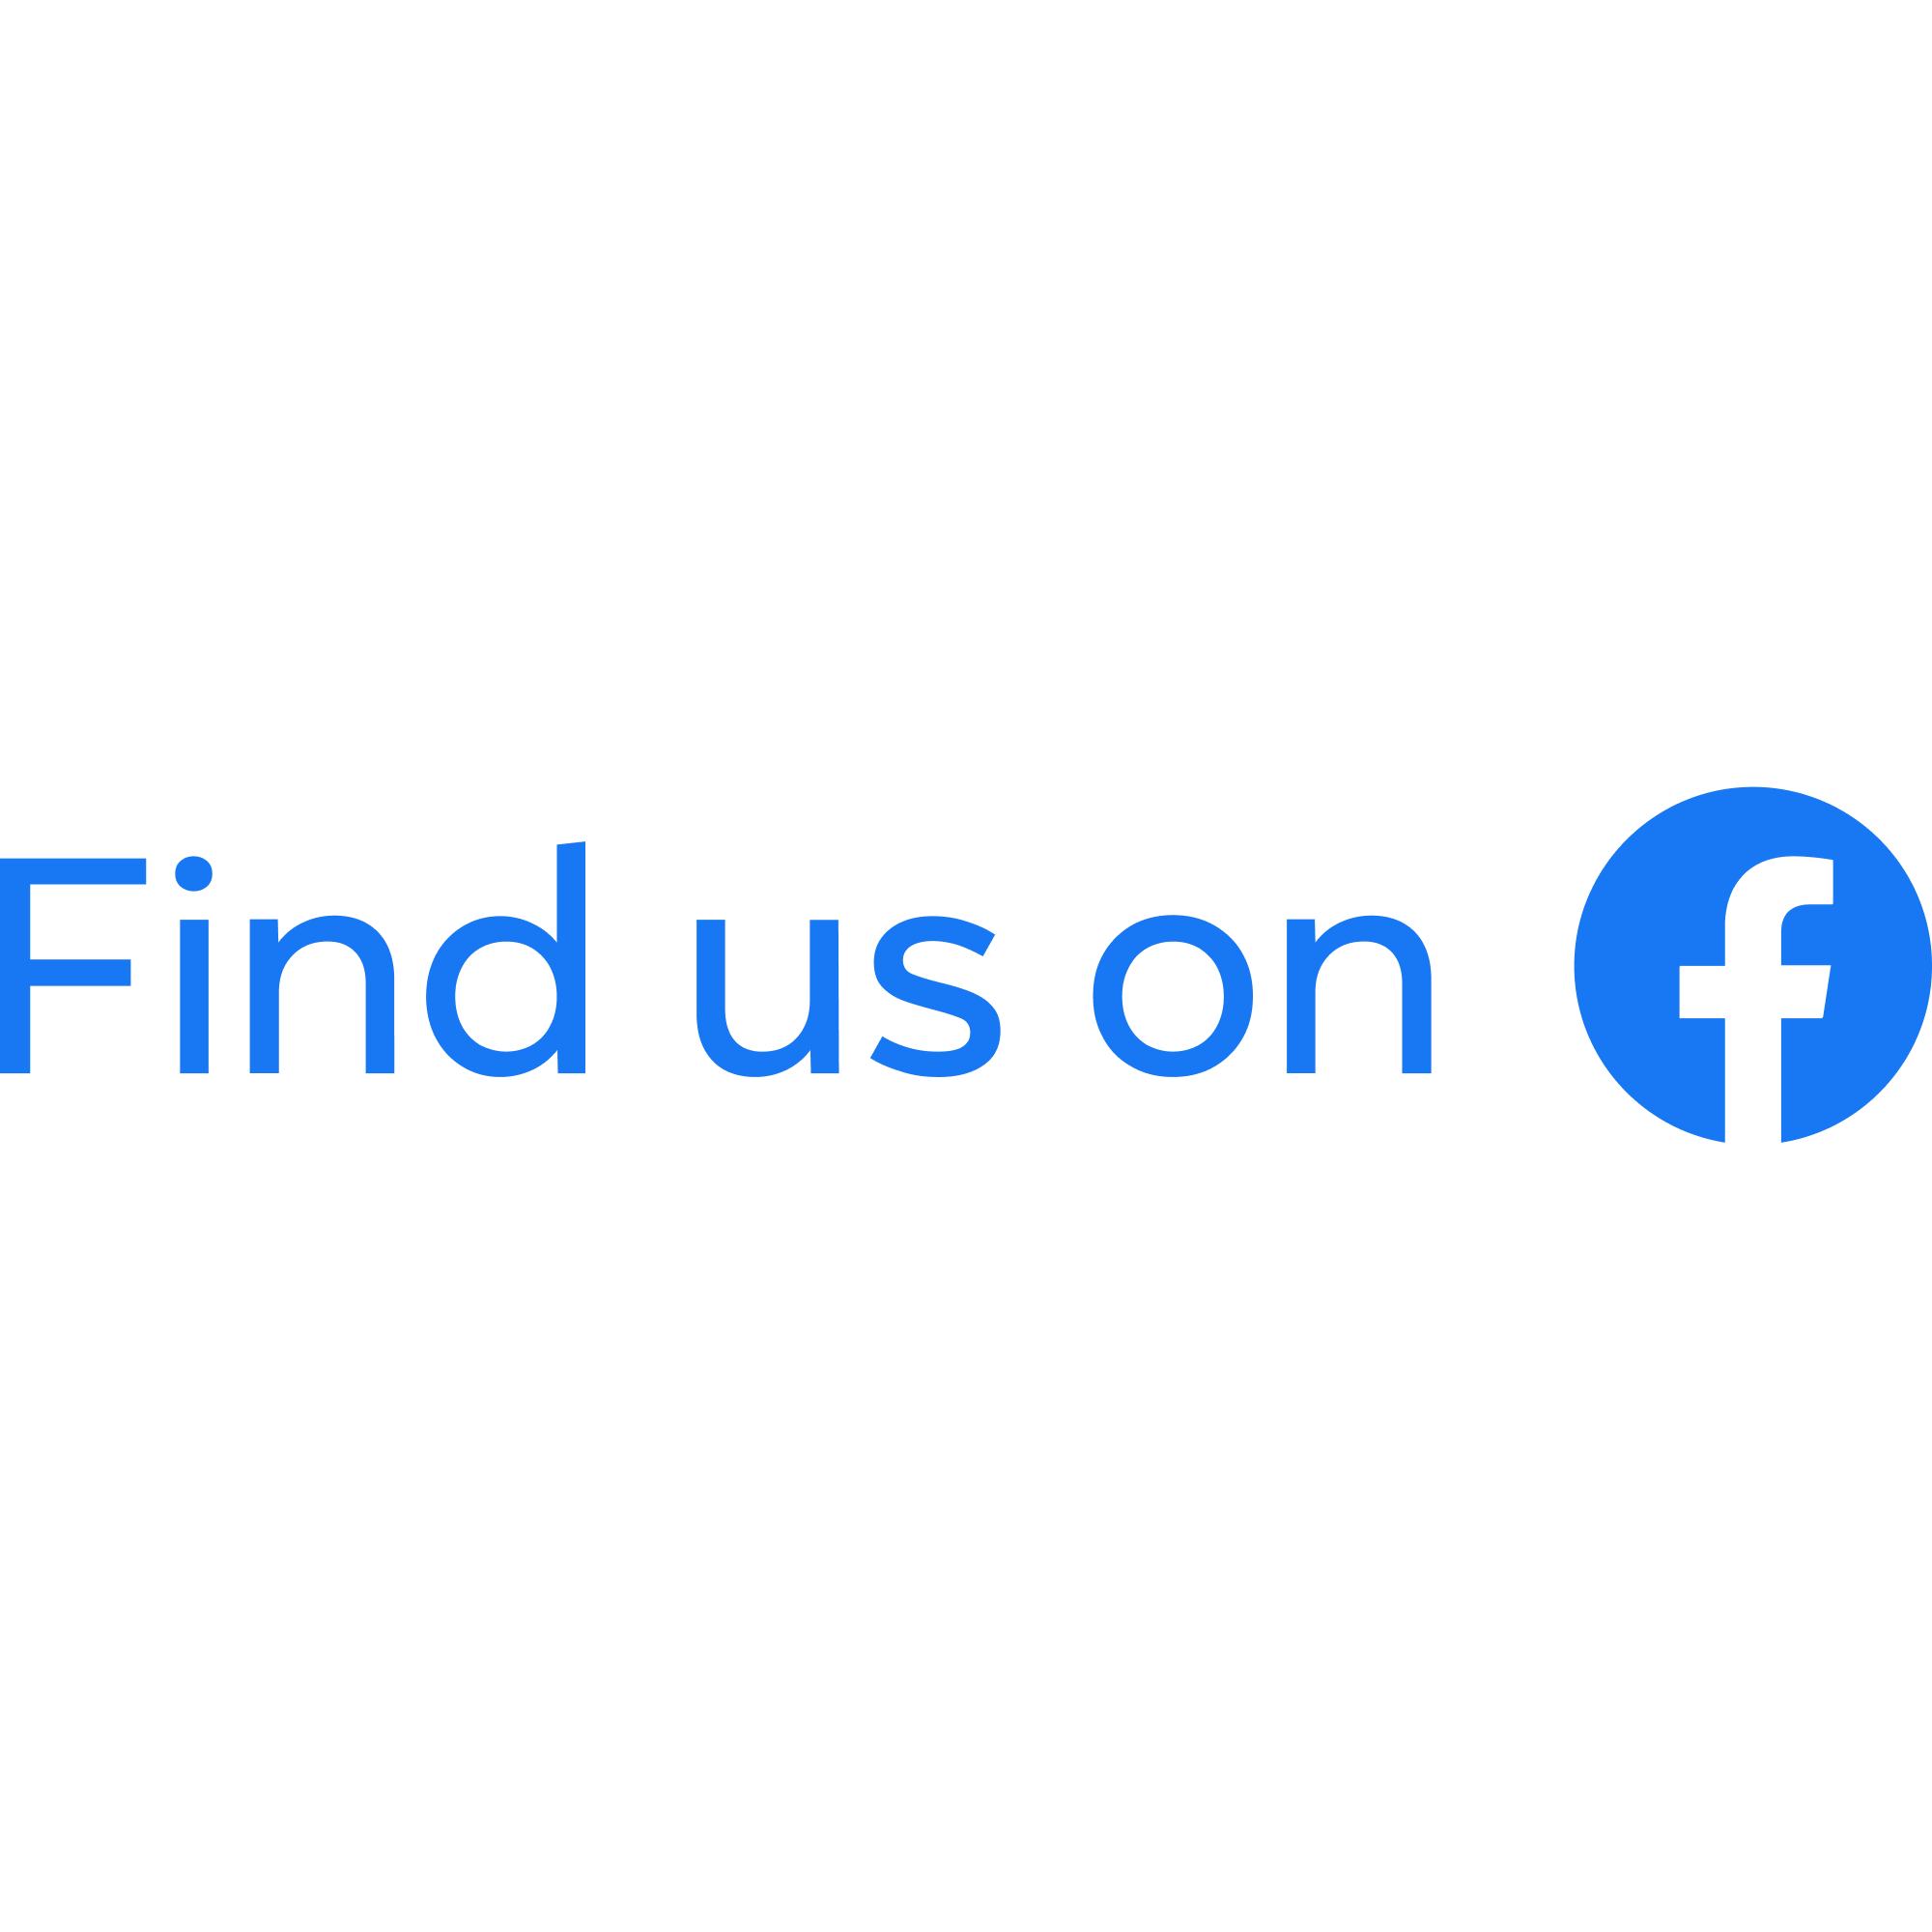 find us on facebook logo 2000